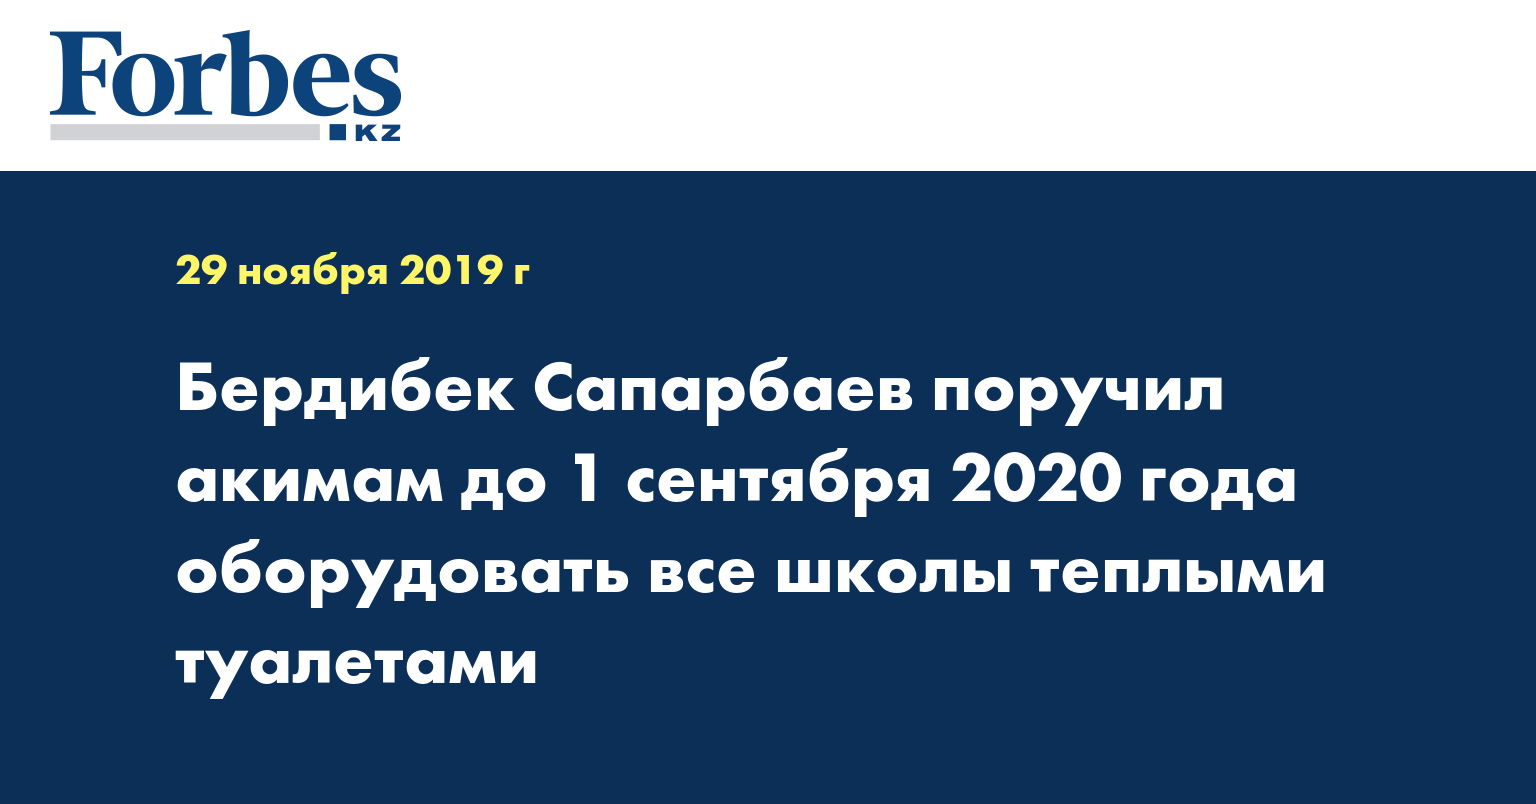 Бердибек Сапарбаев поручил акимам до 1 сентября 2020 года оборудовать все школы теплыми туалетами